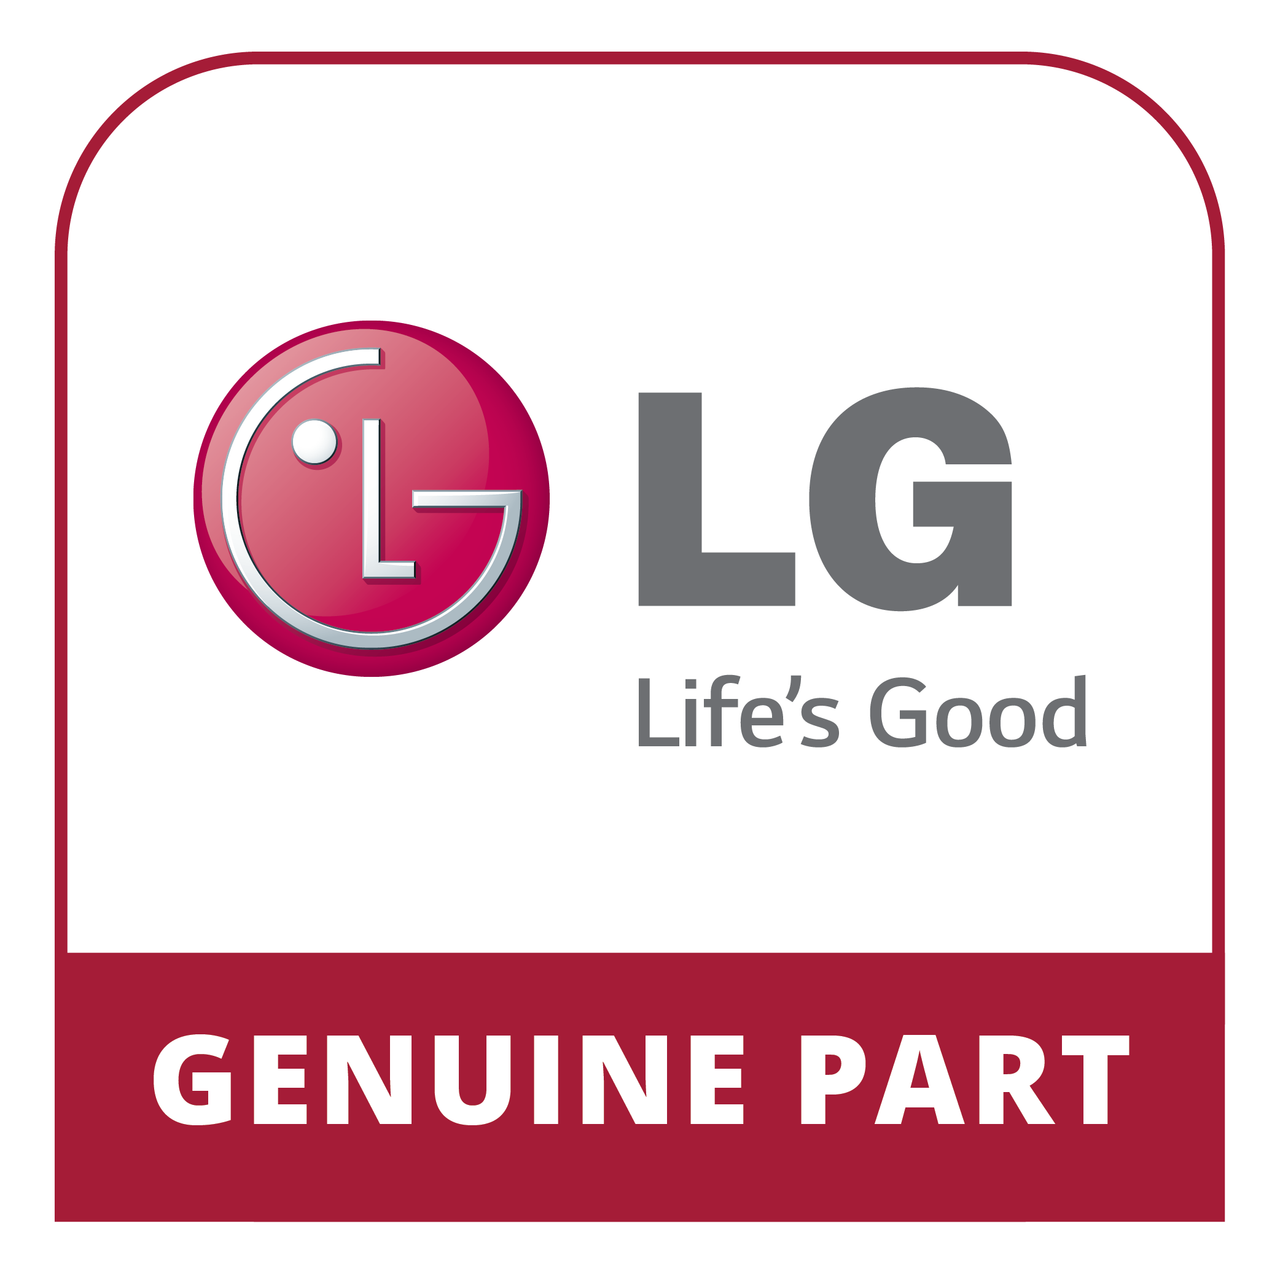 LG MBU63585501 - Clamp - Genuine LG Part